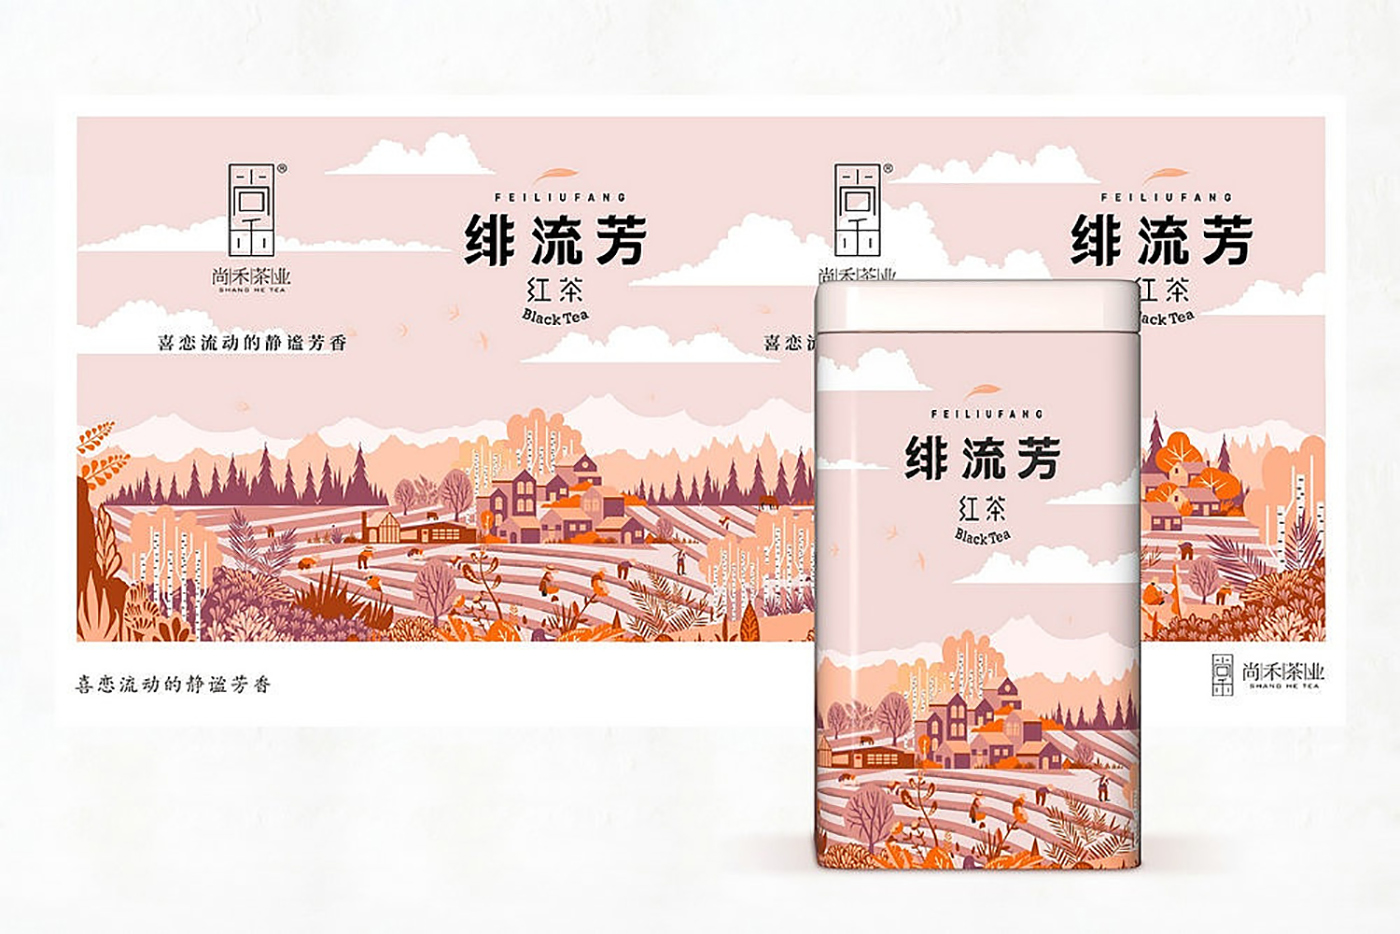 来自西北深山的玉叶茶叶包装设计-创意插画茶叶包装设计